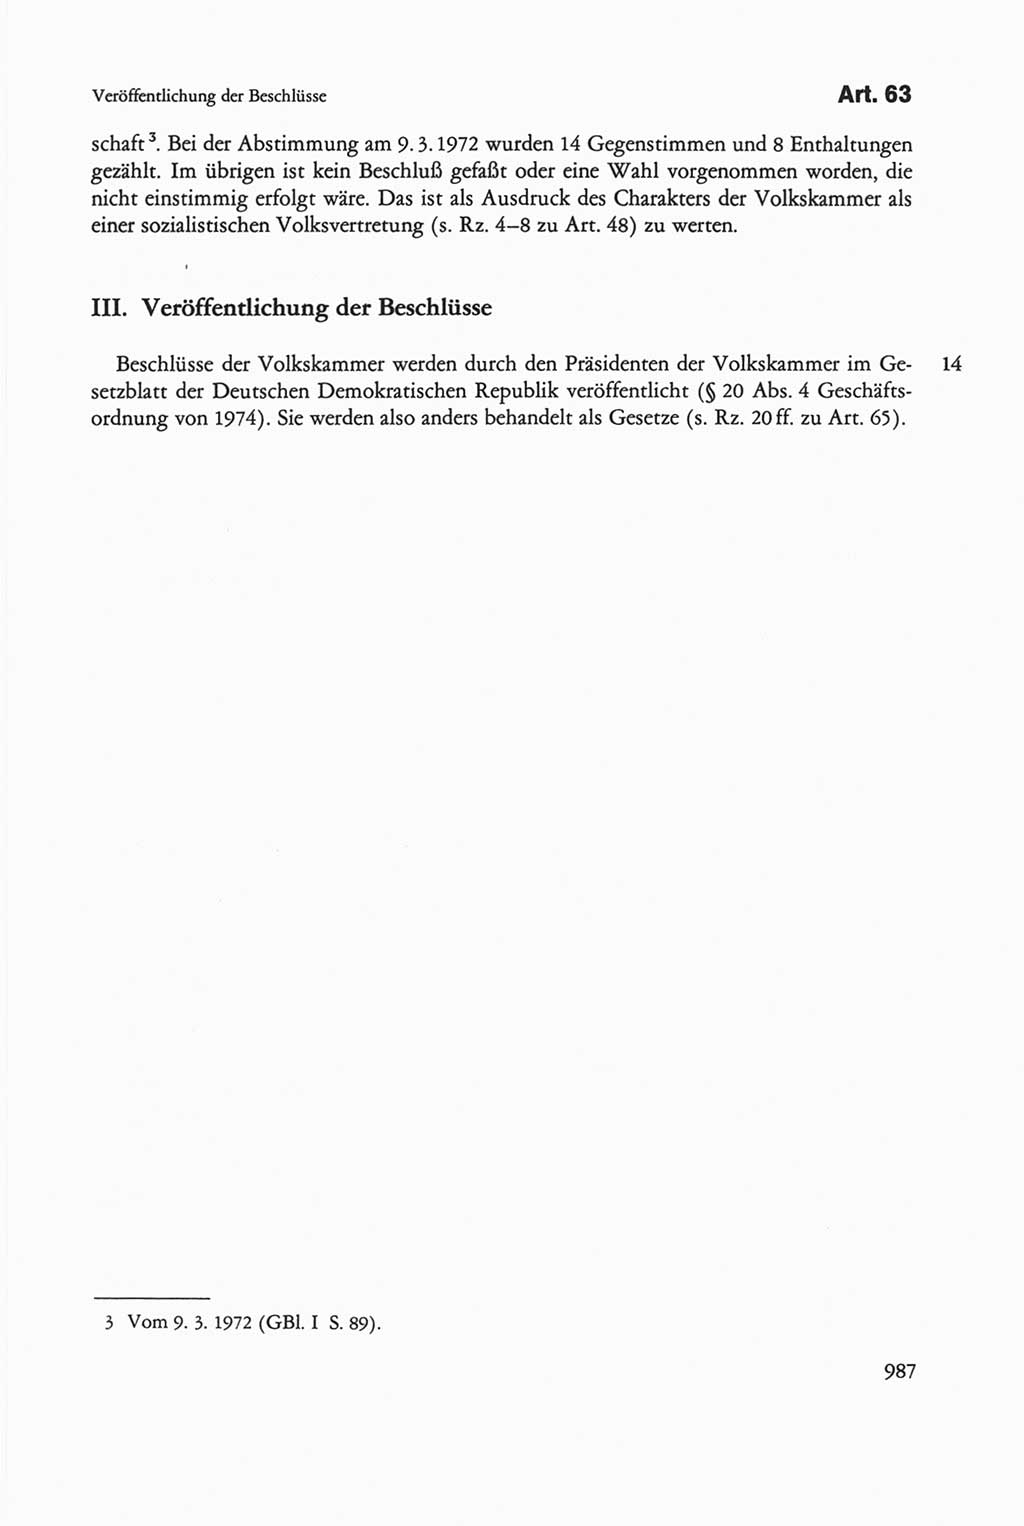 Die sozialistische Verfassung der Deutschen Demokratischen Republik (DDR), Kommentar mit einem Nachtrag 1997, Seite 987 (Soz. Verf. DDR Komm. Nachtr. 1997, S. 987)